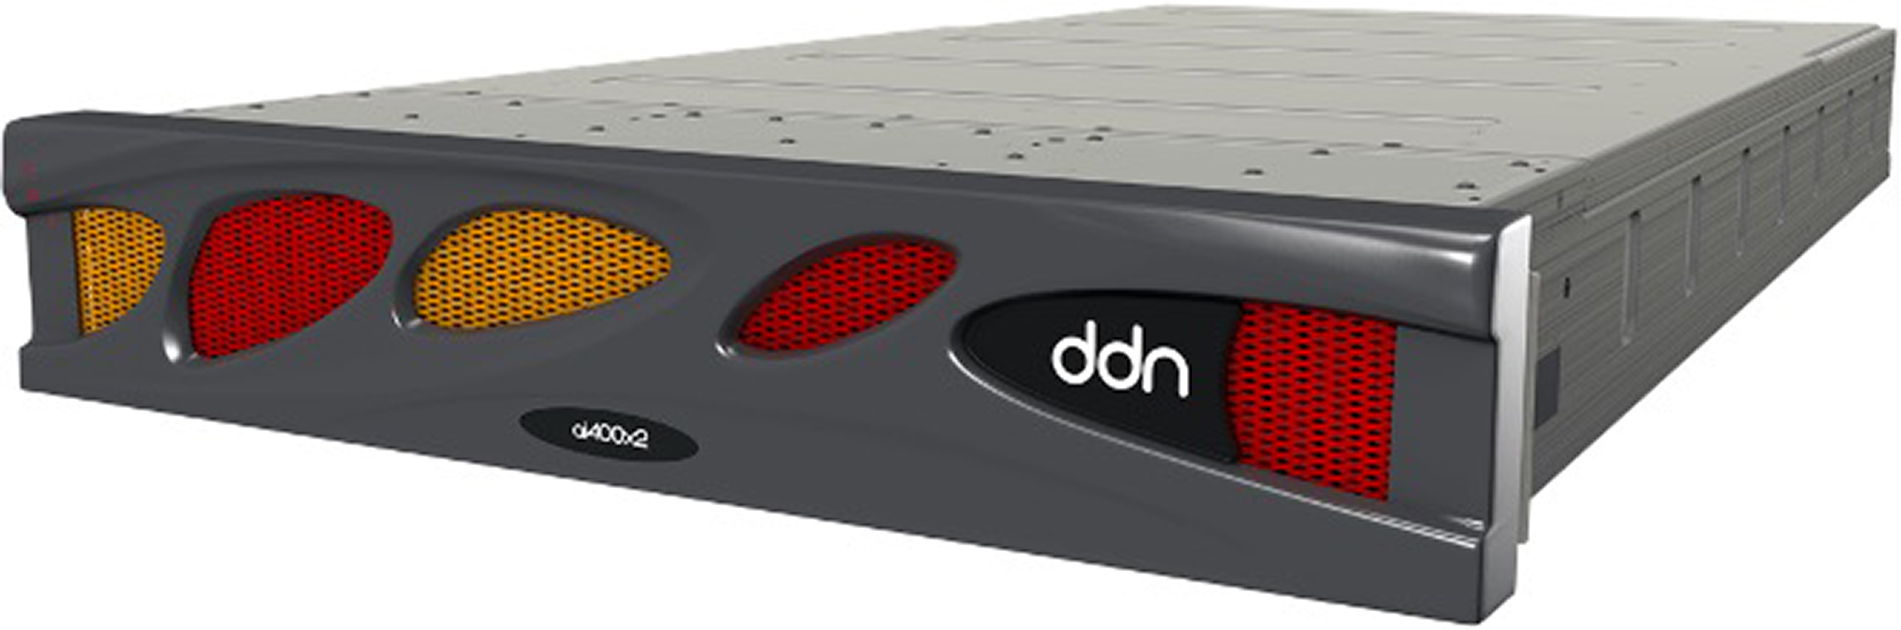 DDN、従来の２倍のスループットを実現する最新の次世代ストレージプラットフォームを発表